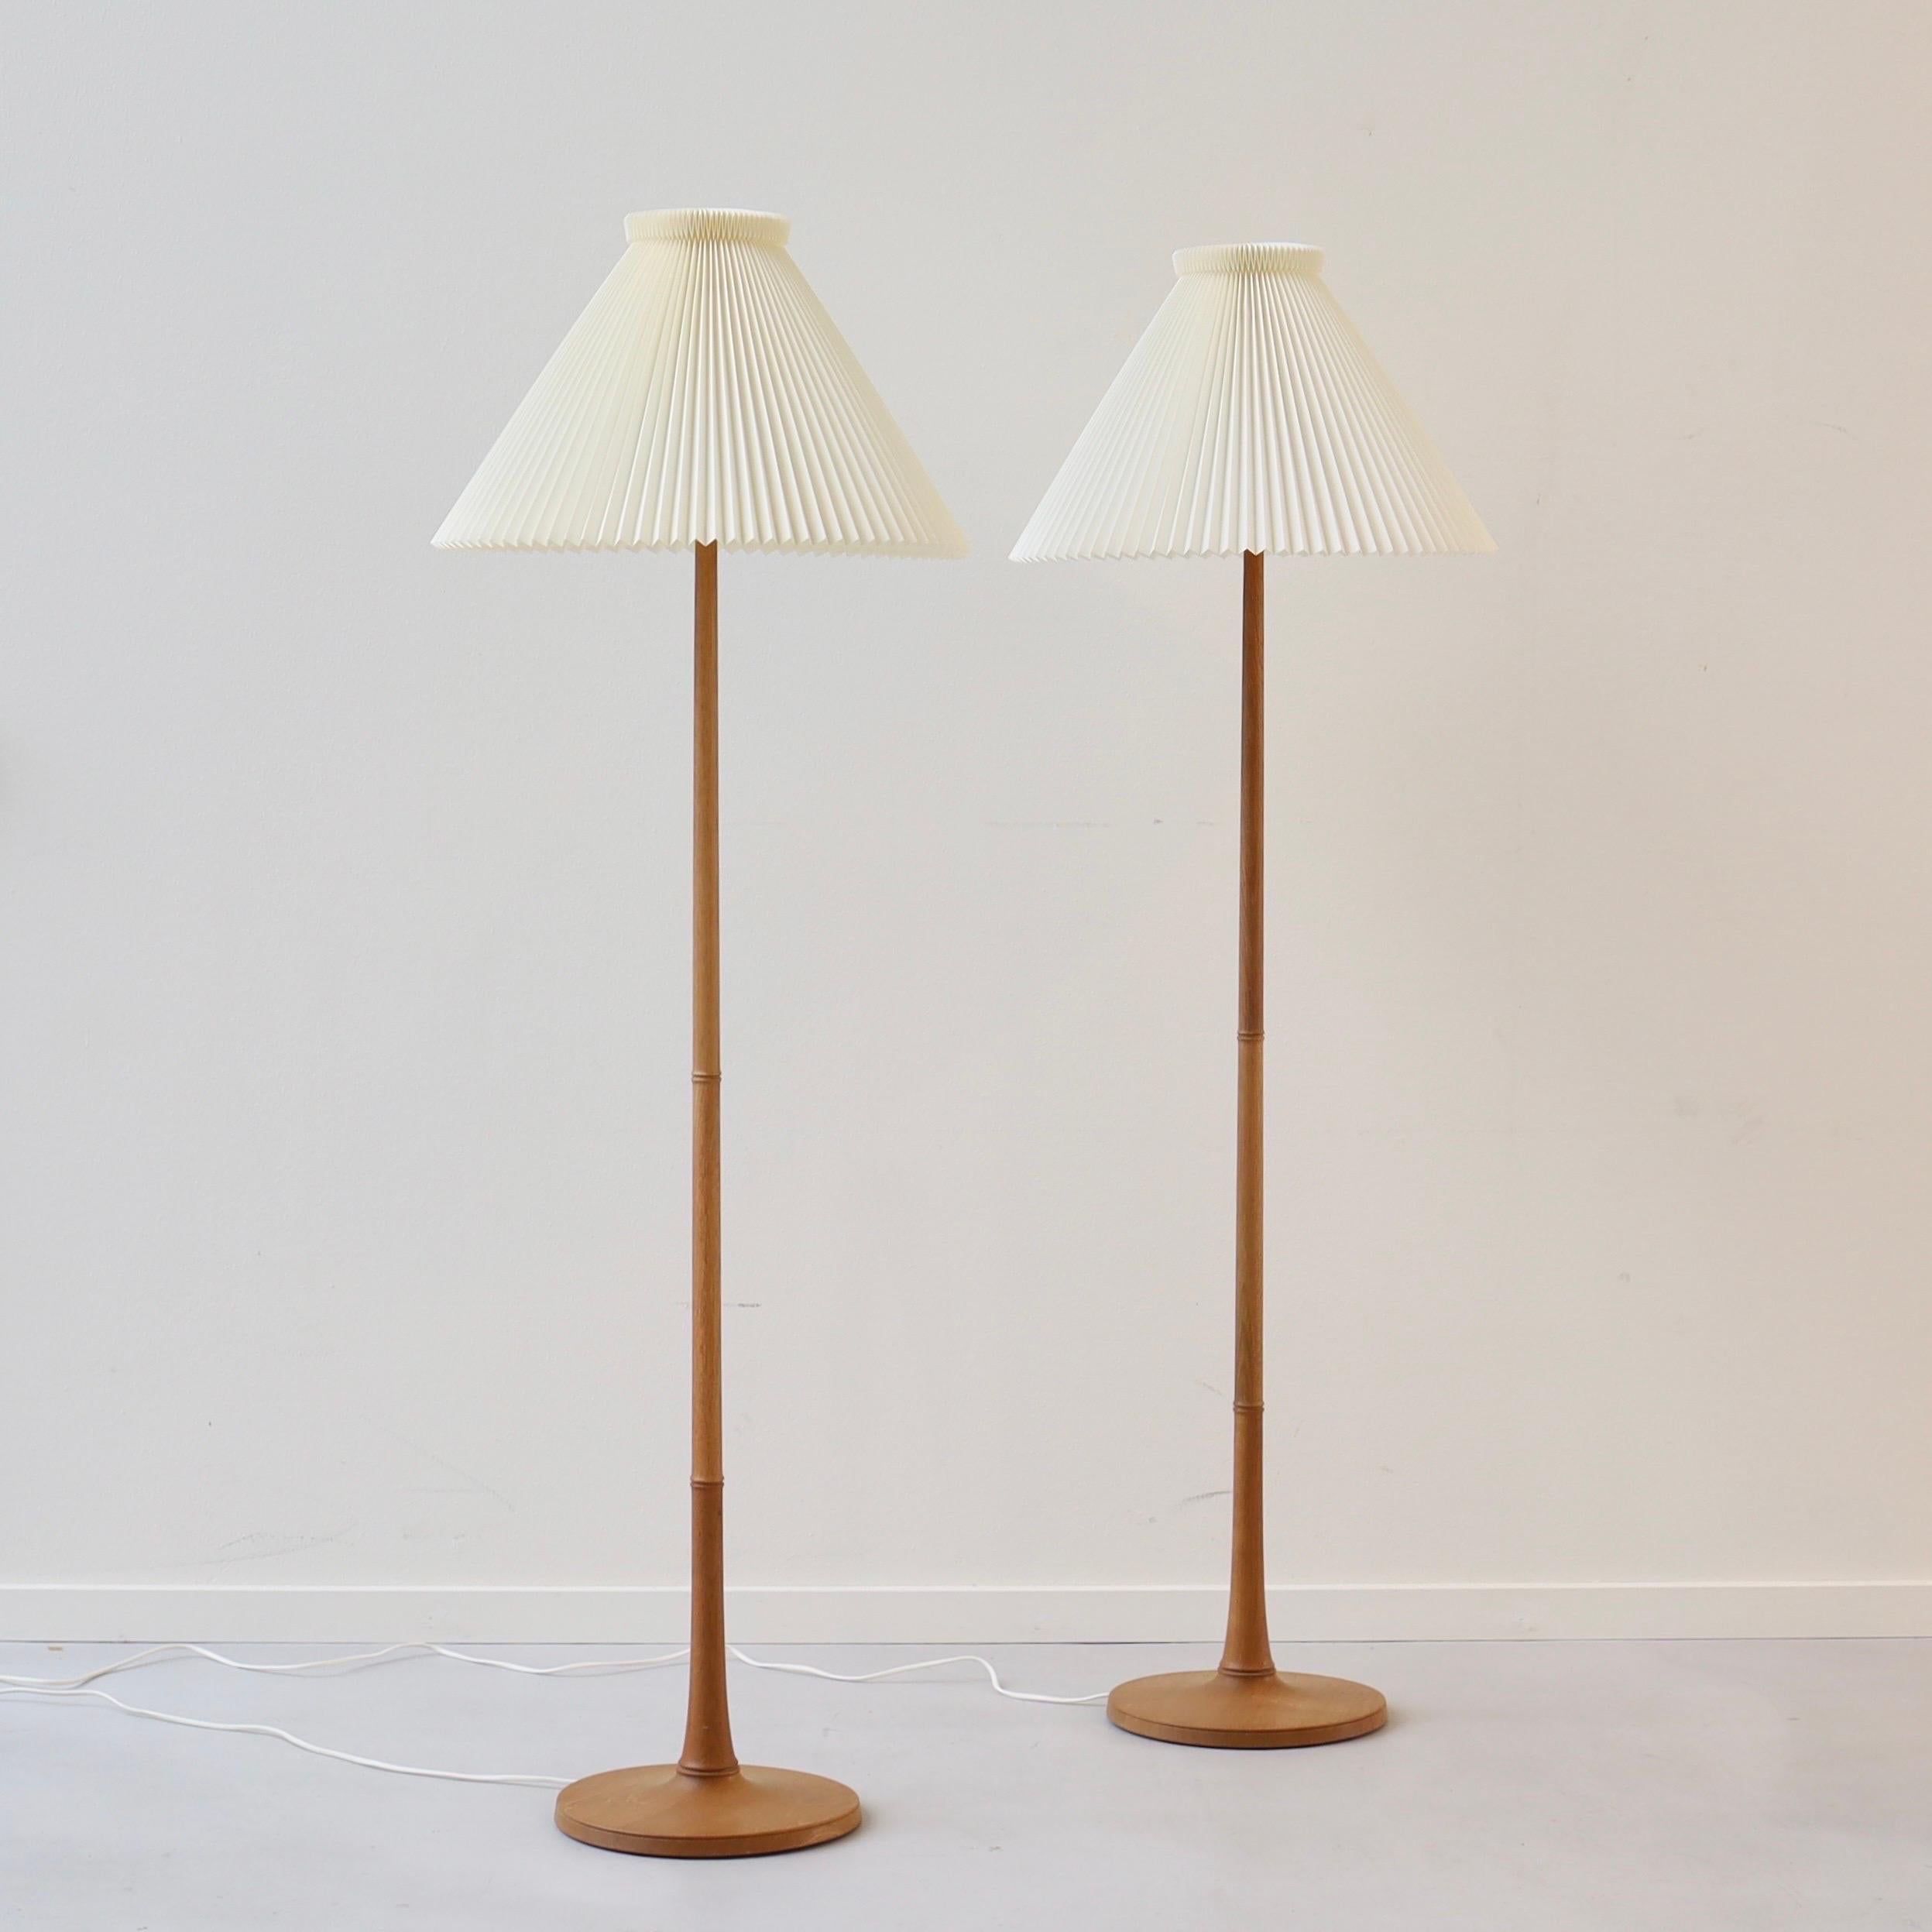 Eine klassische Stehlampe aus Eichenholz in ausgezeichnetem Vintage-Zustand, entworfen von Esben Klint im Jahr 1957 für Le Klint. 

* Eine Reihe von Stehlampen aus Eichenholz mit einem weißen, handgefalteten Lampenschirm
* Designer: Esben Klint
*